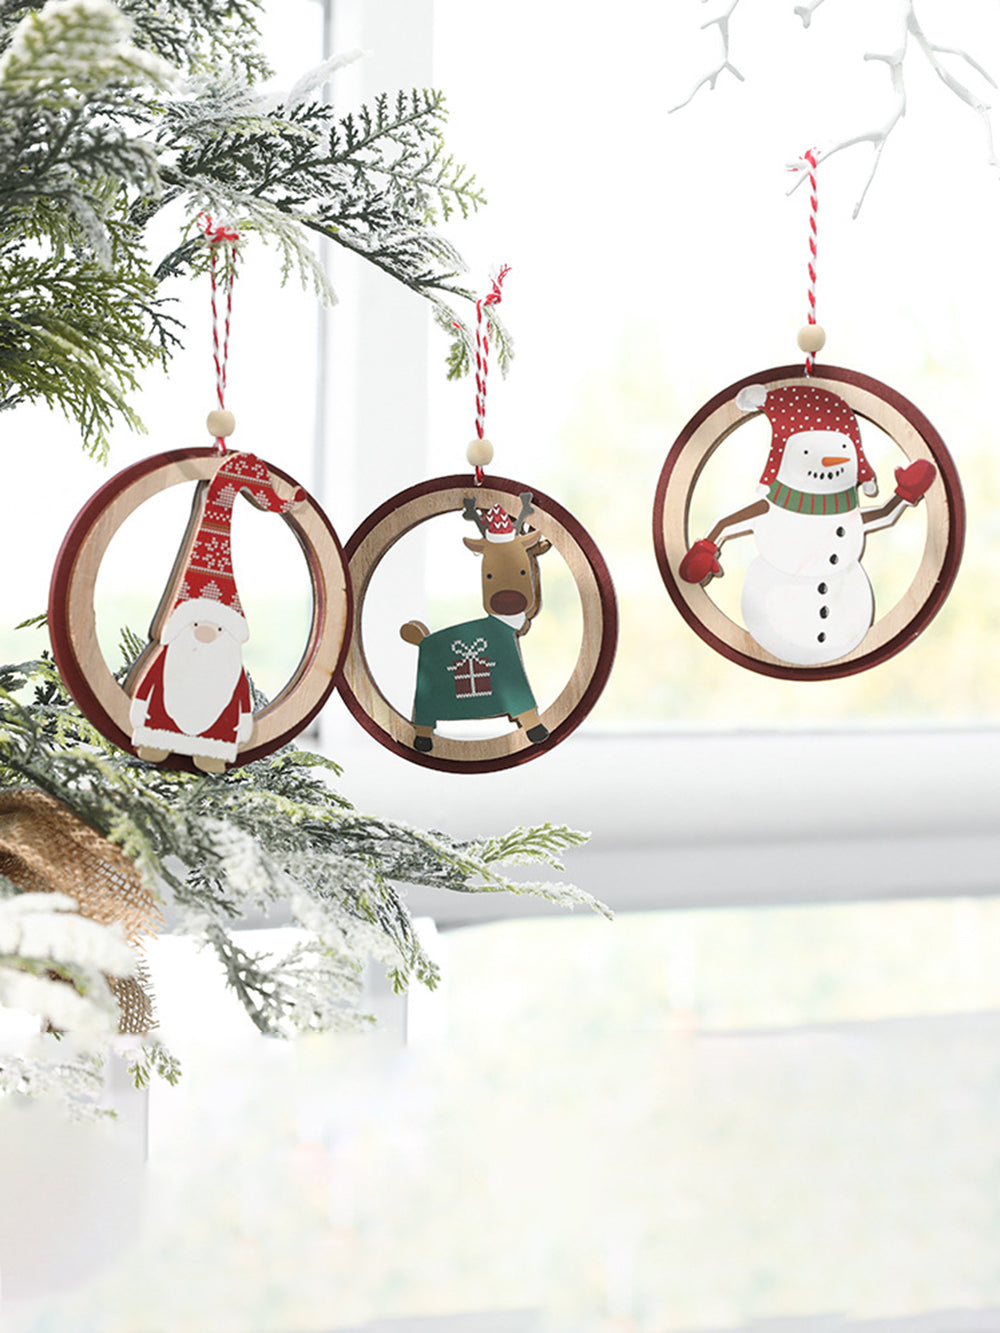 Santa Claus Snowman Wooden Colorful Ornament